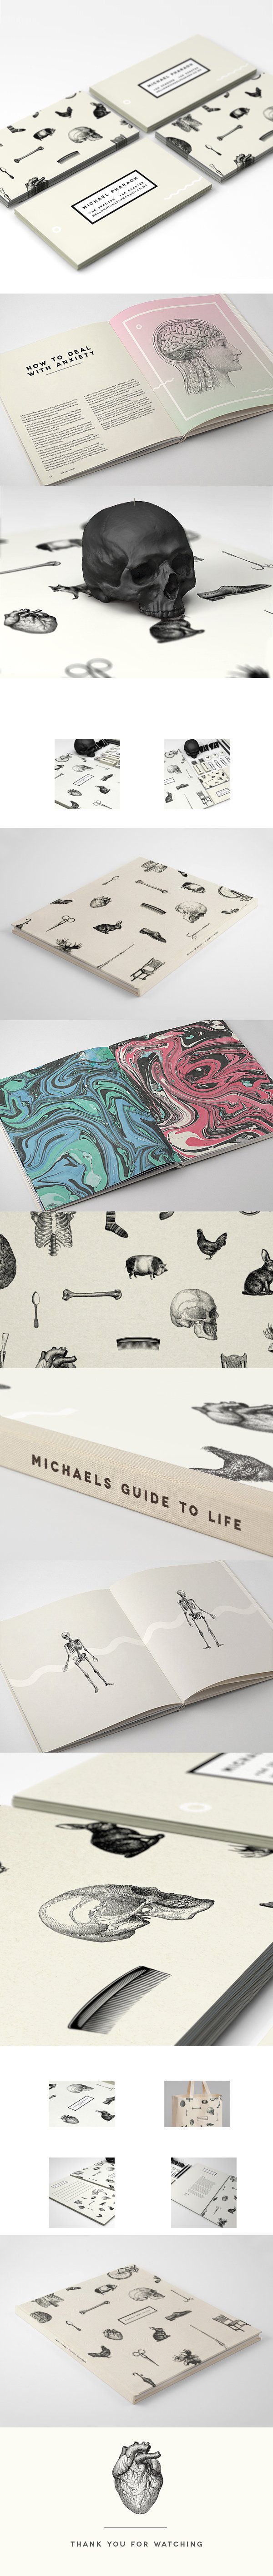 国外独特动物与五官创意画册设计案例欣赏